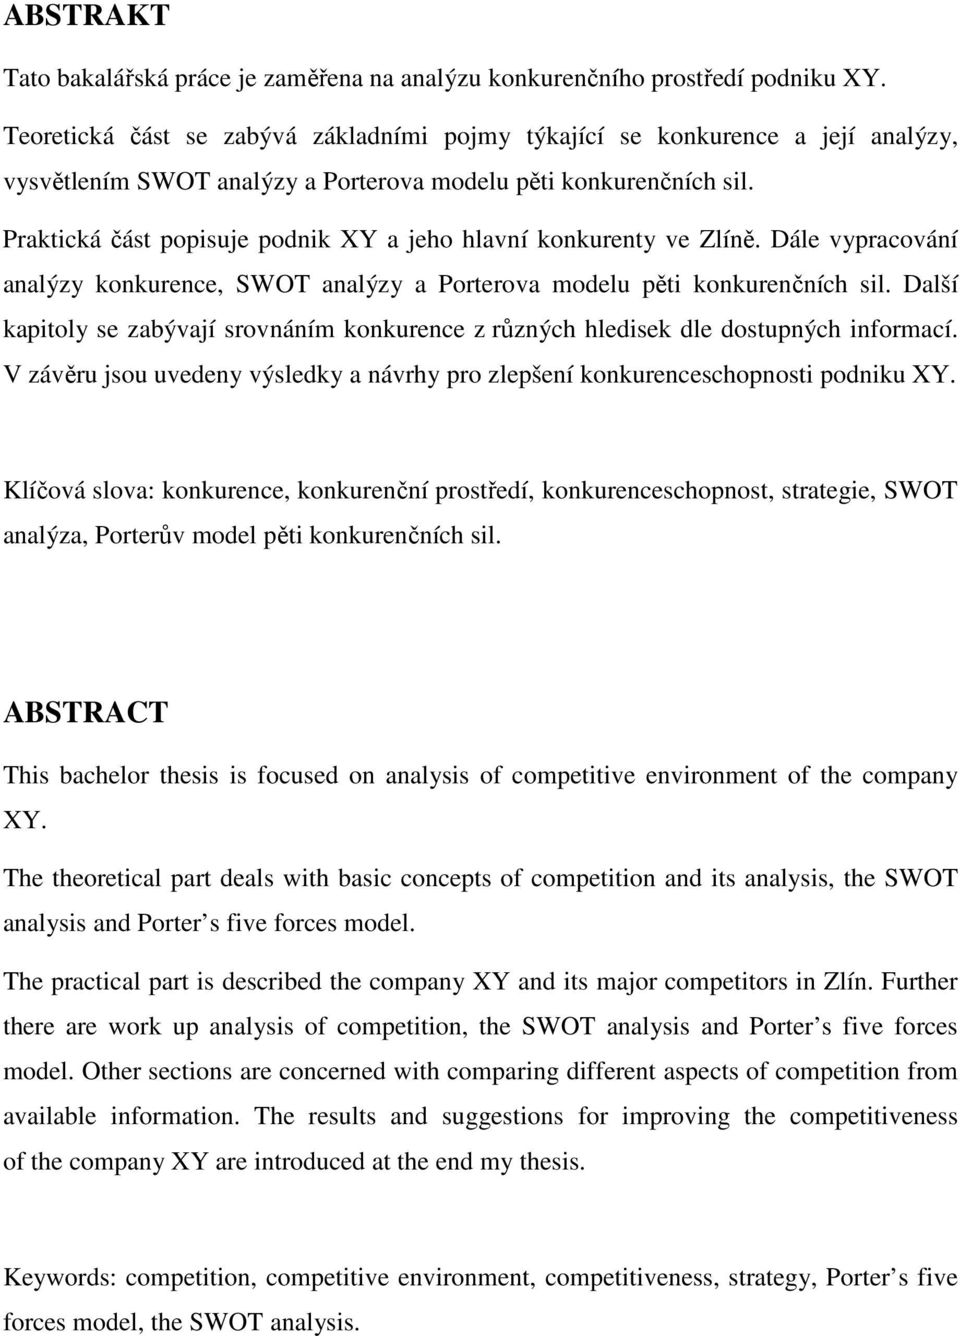 Praktická část popisuje podnik XY a jeho hlavní konkurenty ve Zlíně. Dále vypracování analýzy konkurence, SWOT analýzy a Porterova modelu pěti konkurenčních sil.